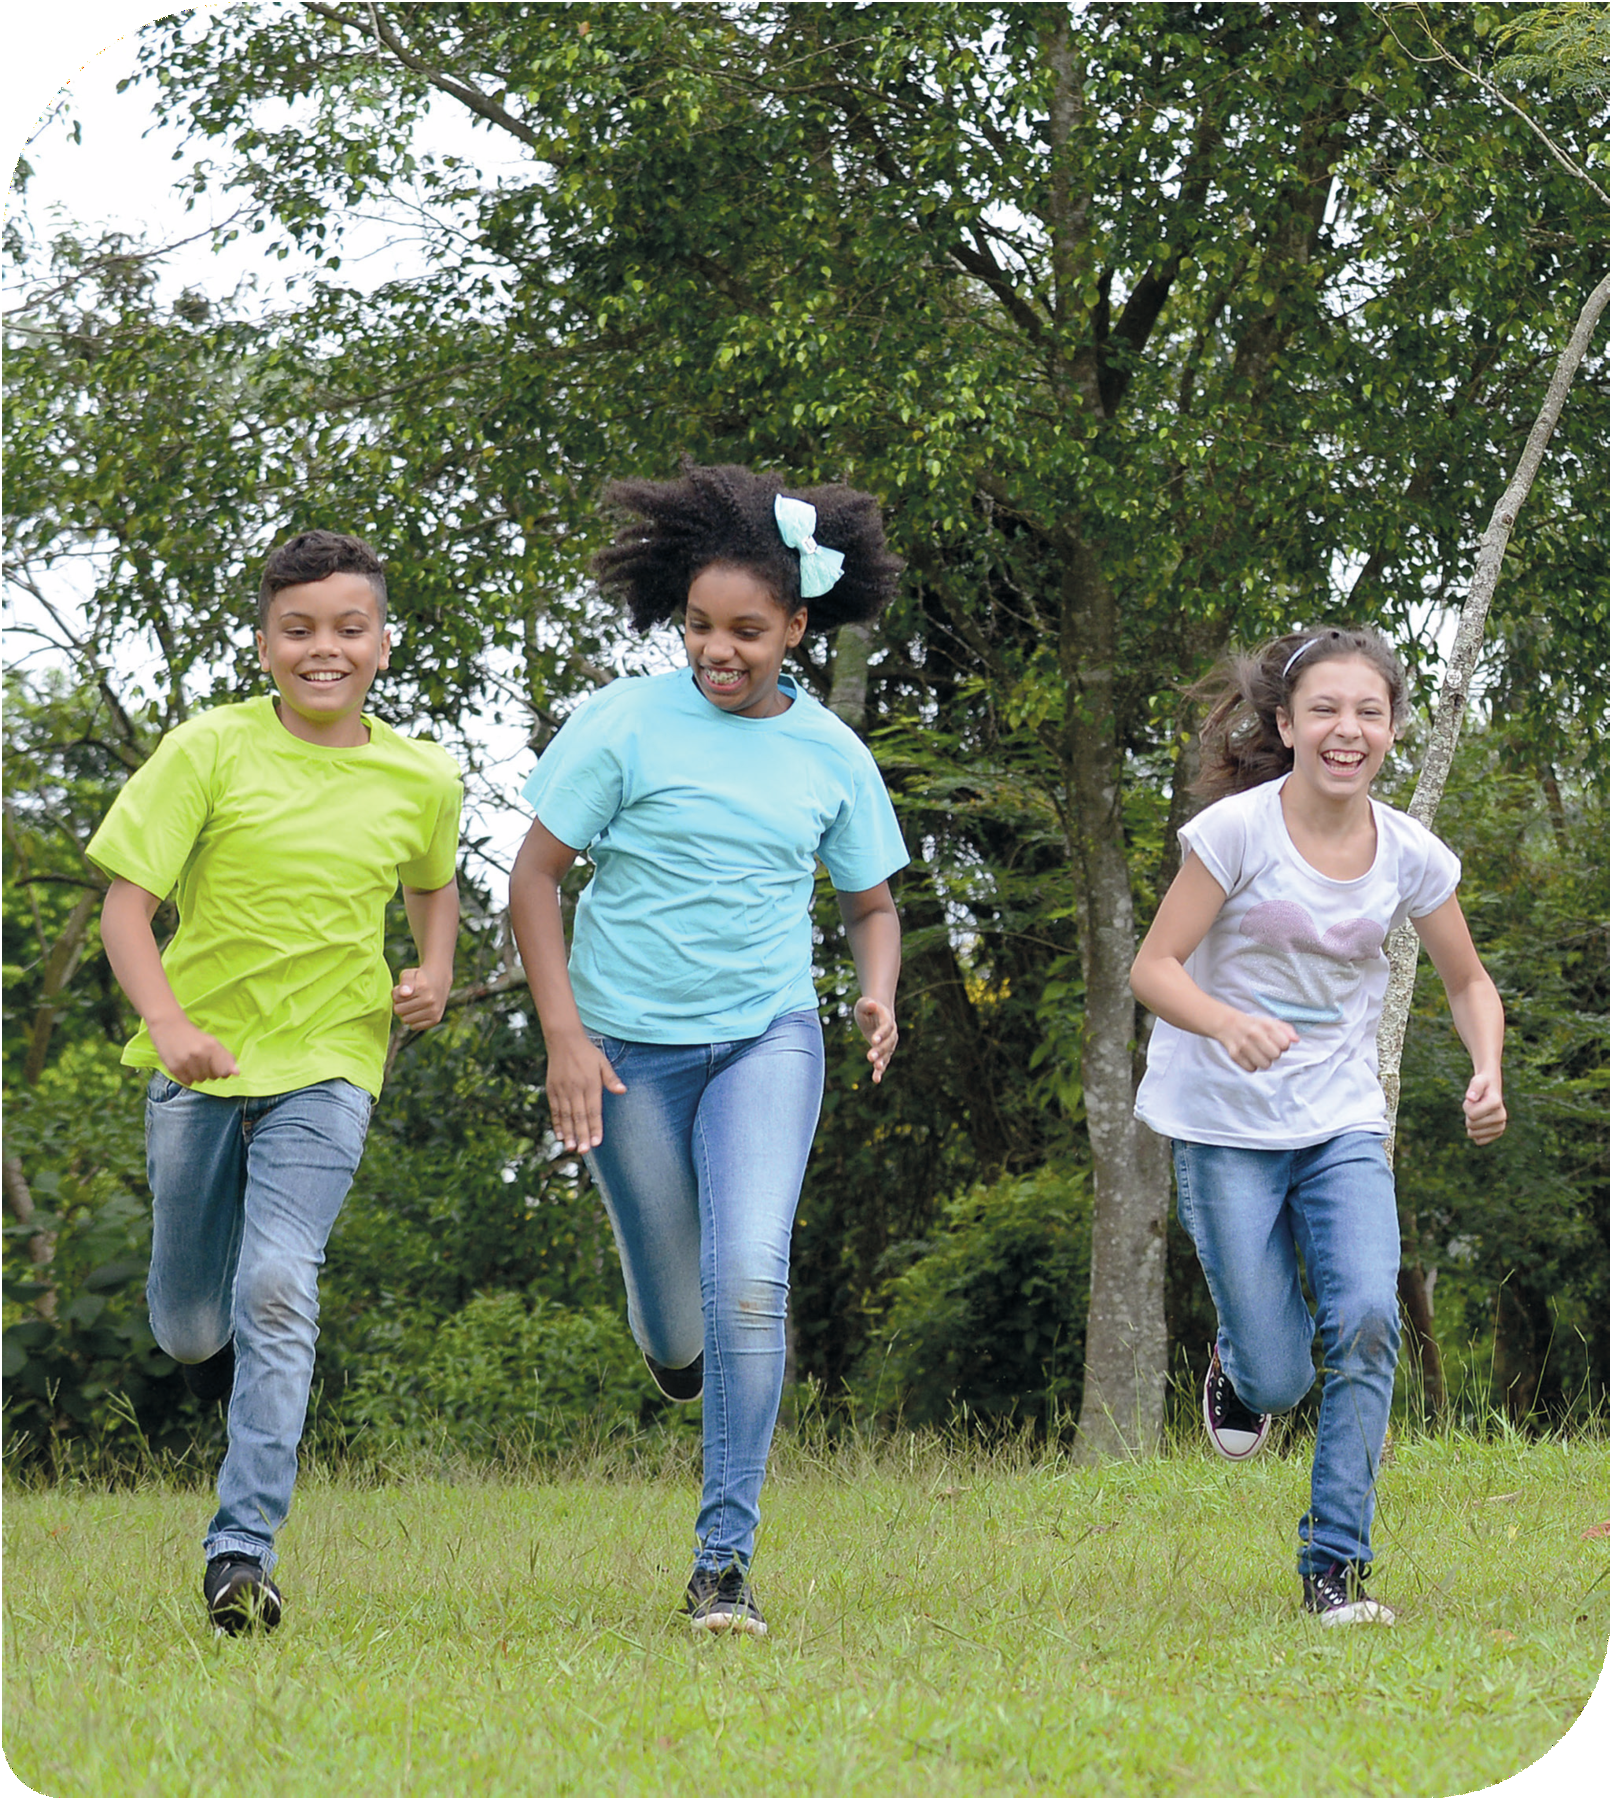 Fotografia. Três crianças correndo em uma área gramada. Elas sorriem. Ao fundo há árvores.